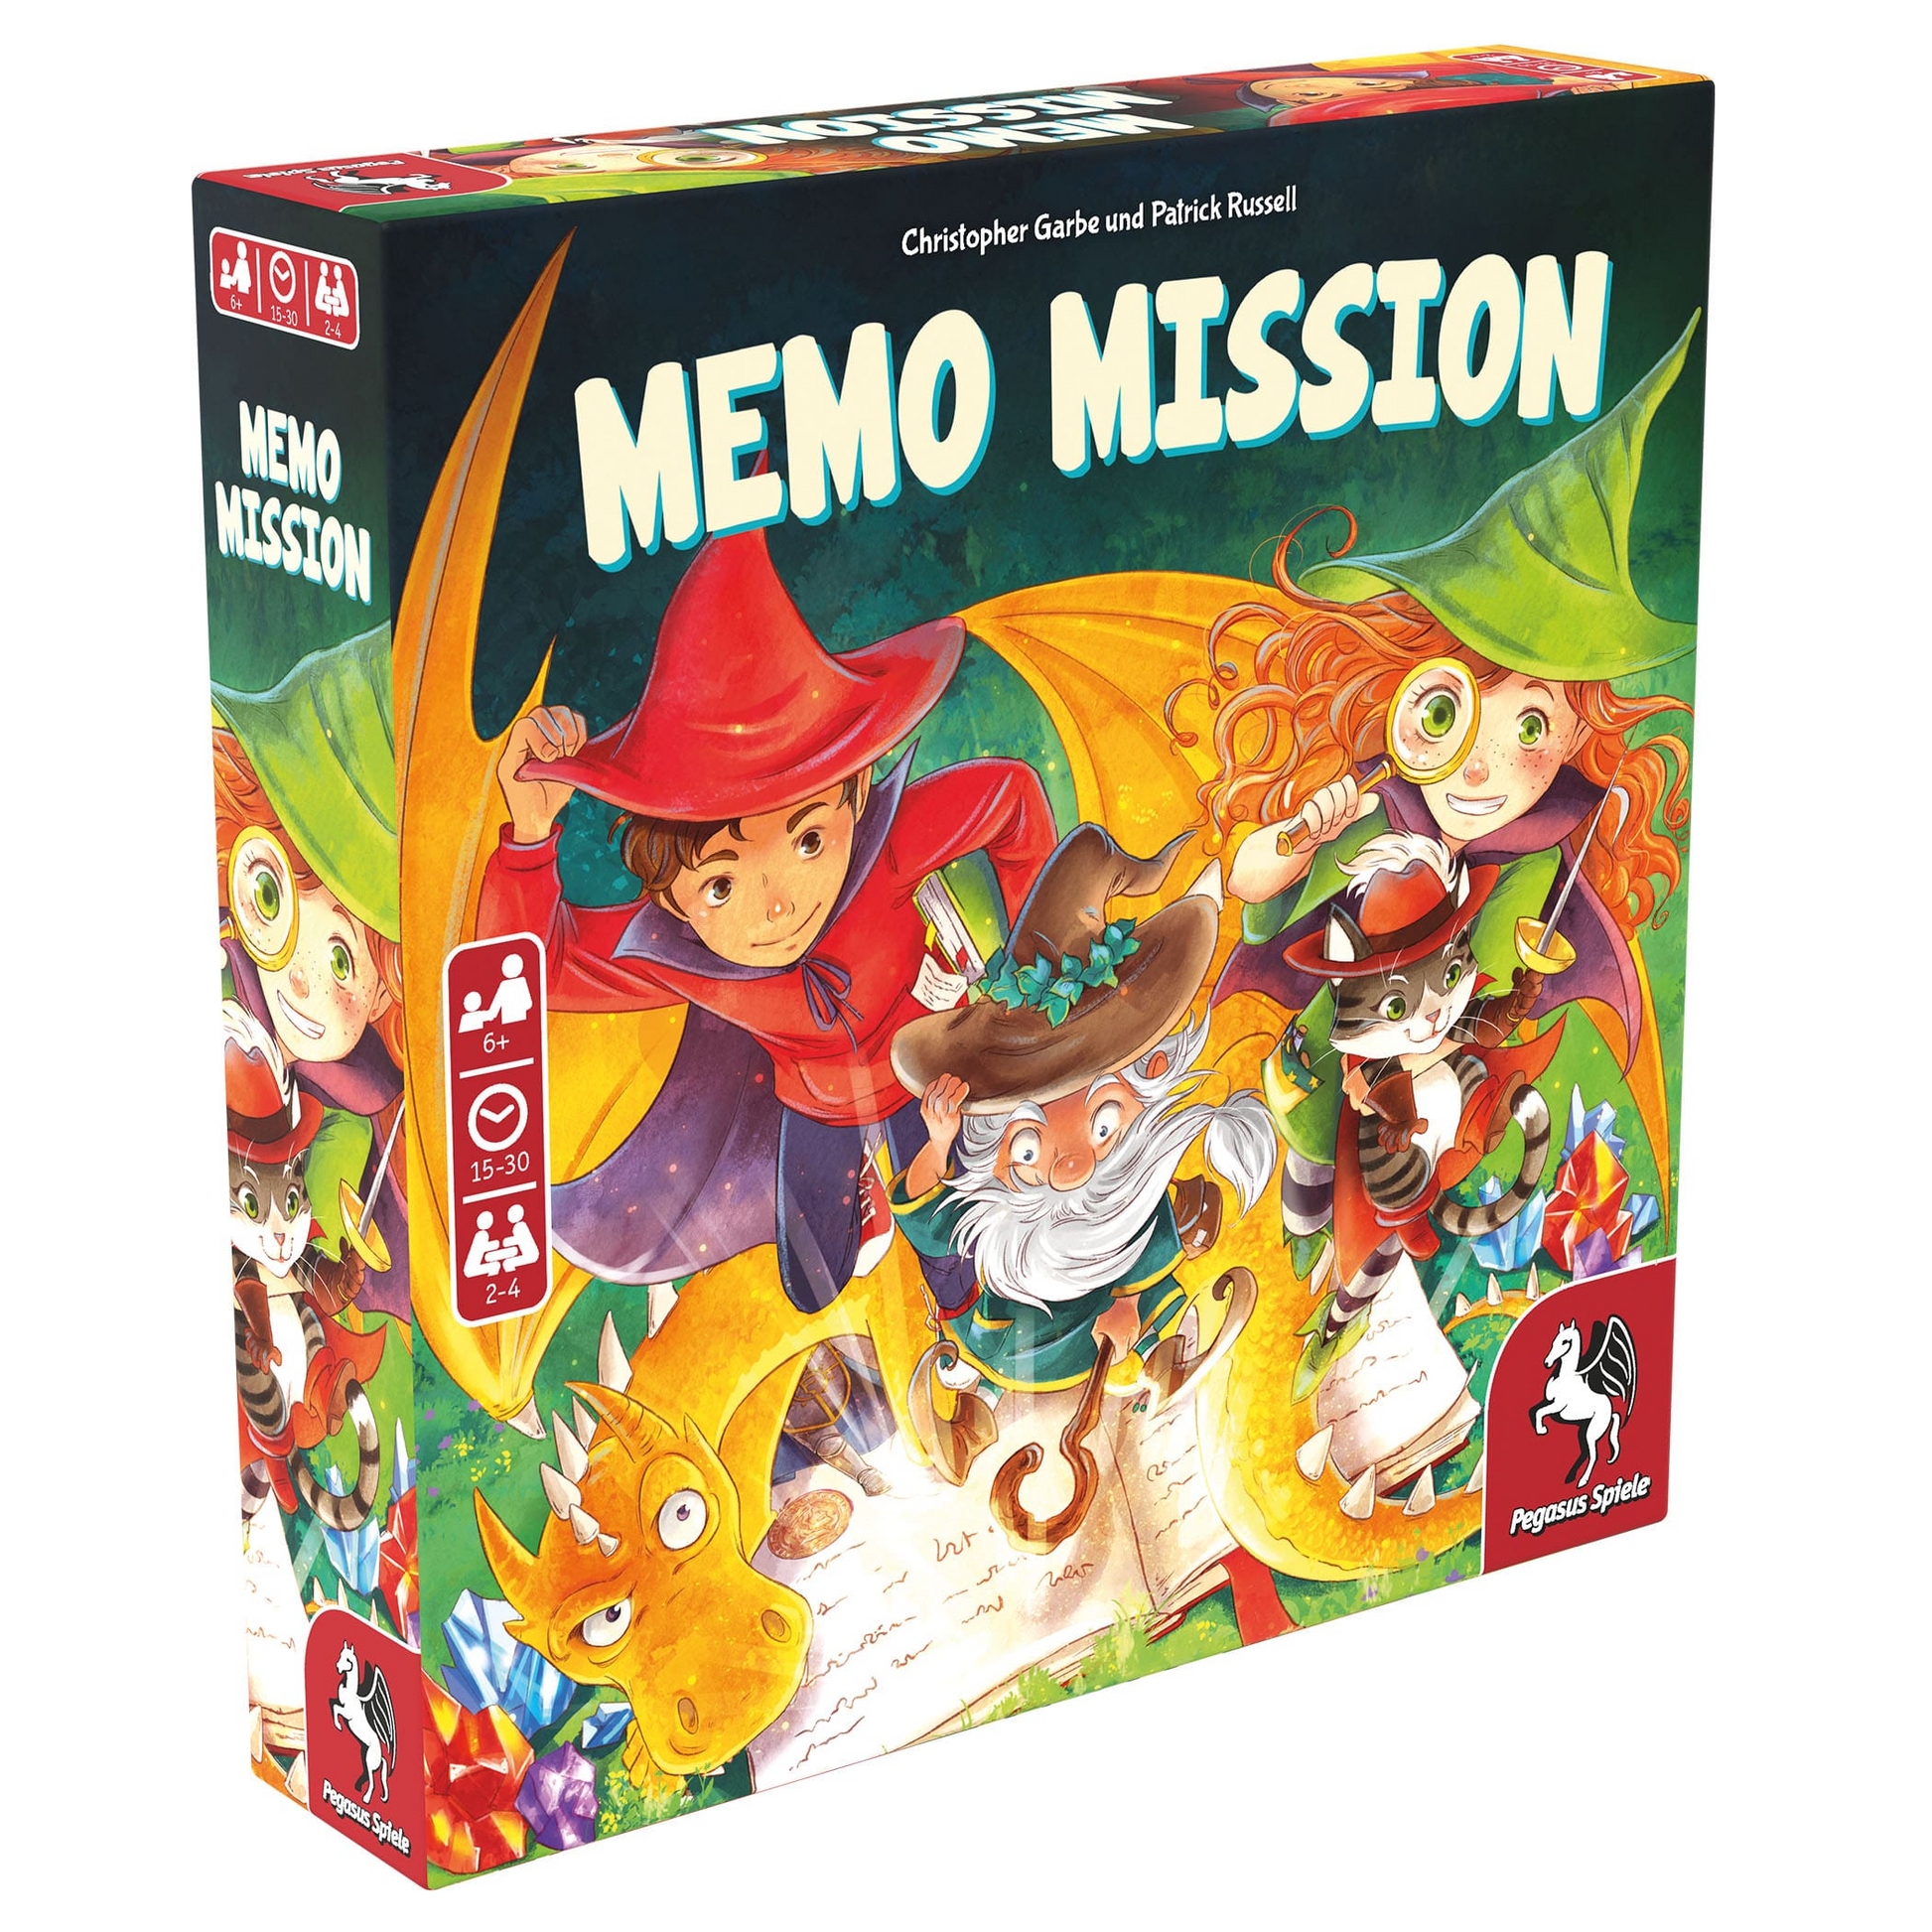 Memo Mission